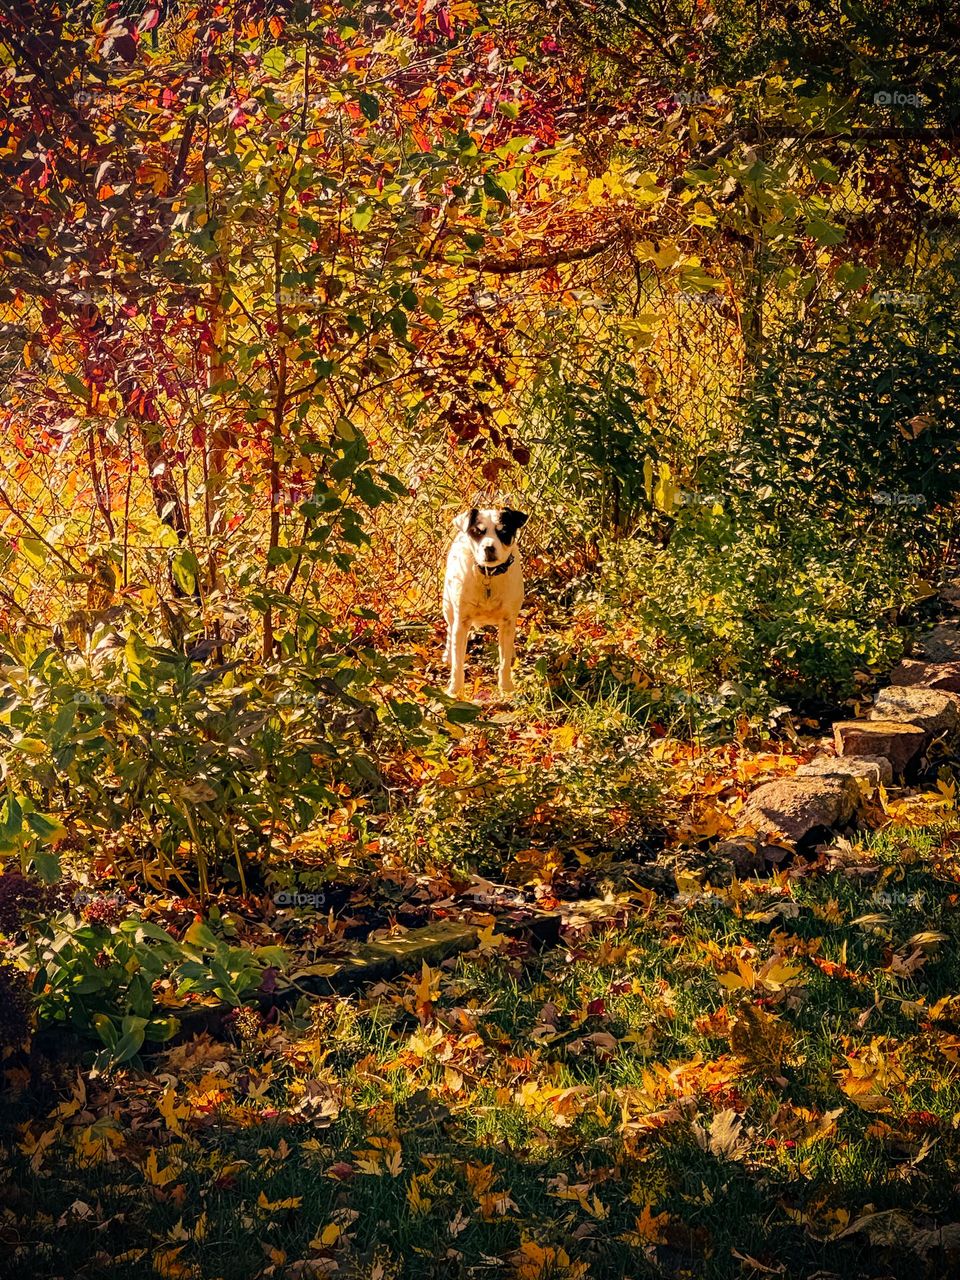 Cute little dog in an autumn garden in golden sunlight